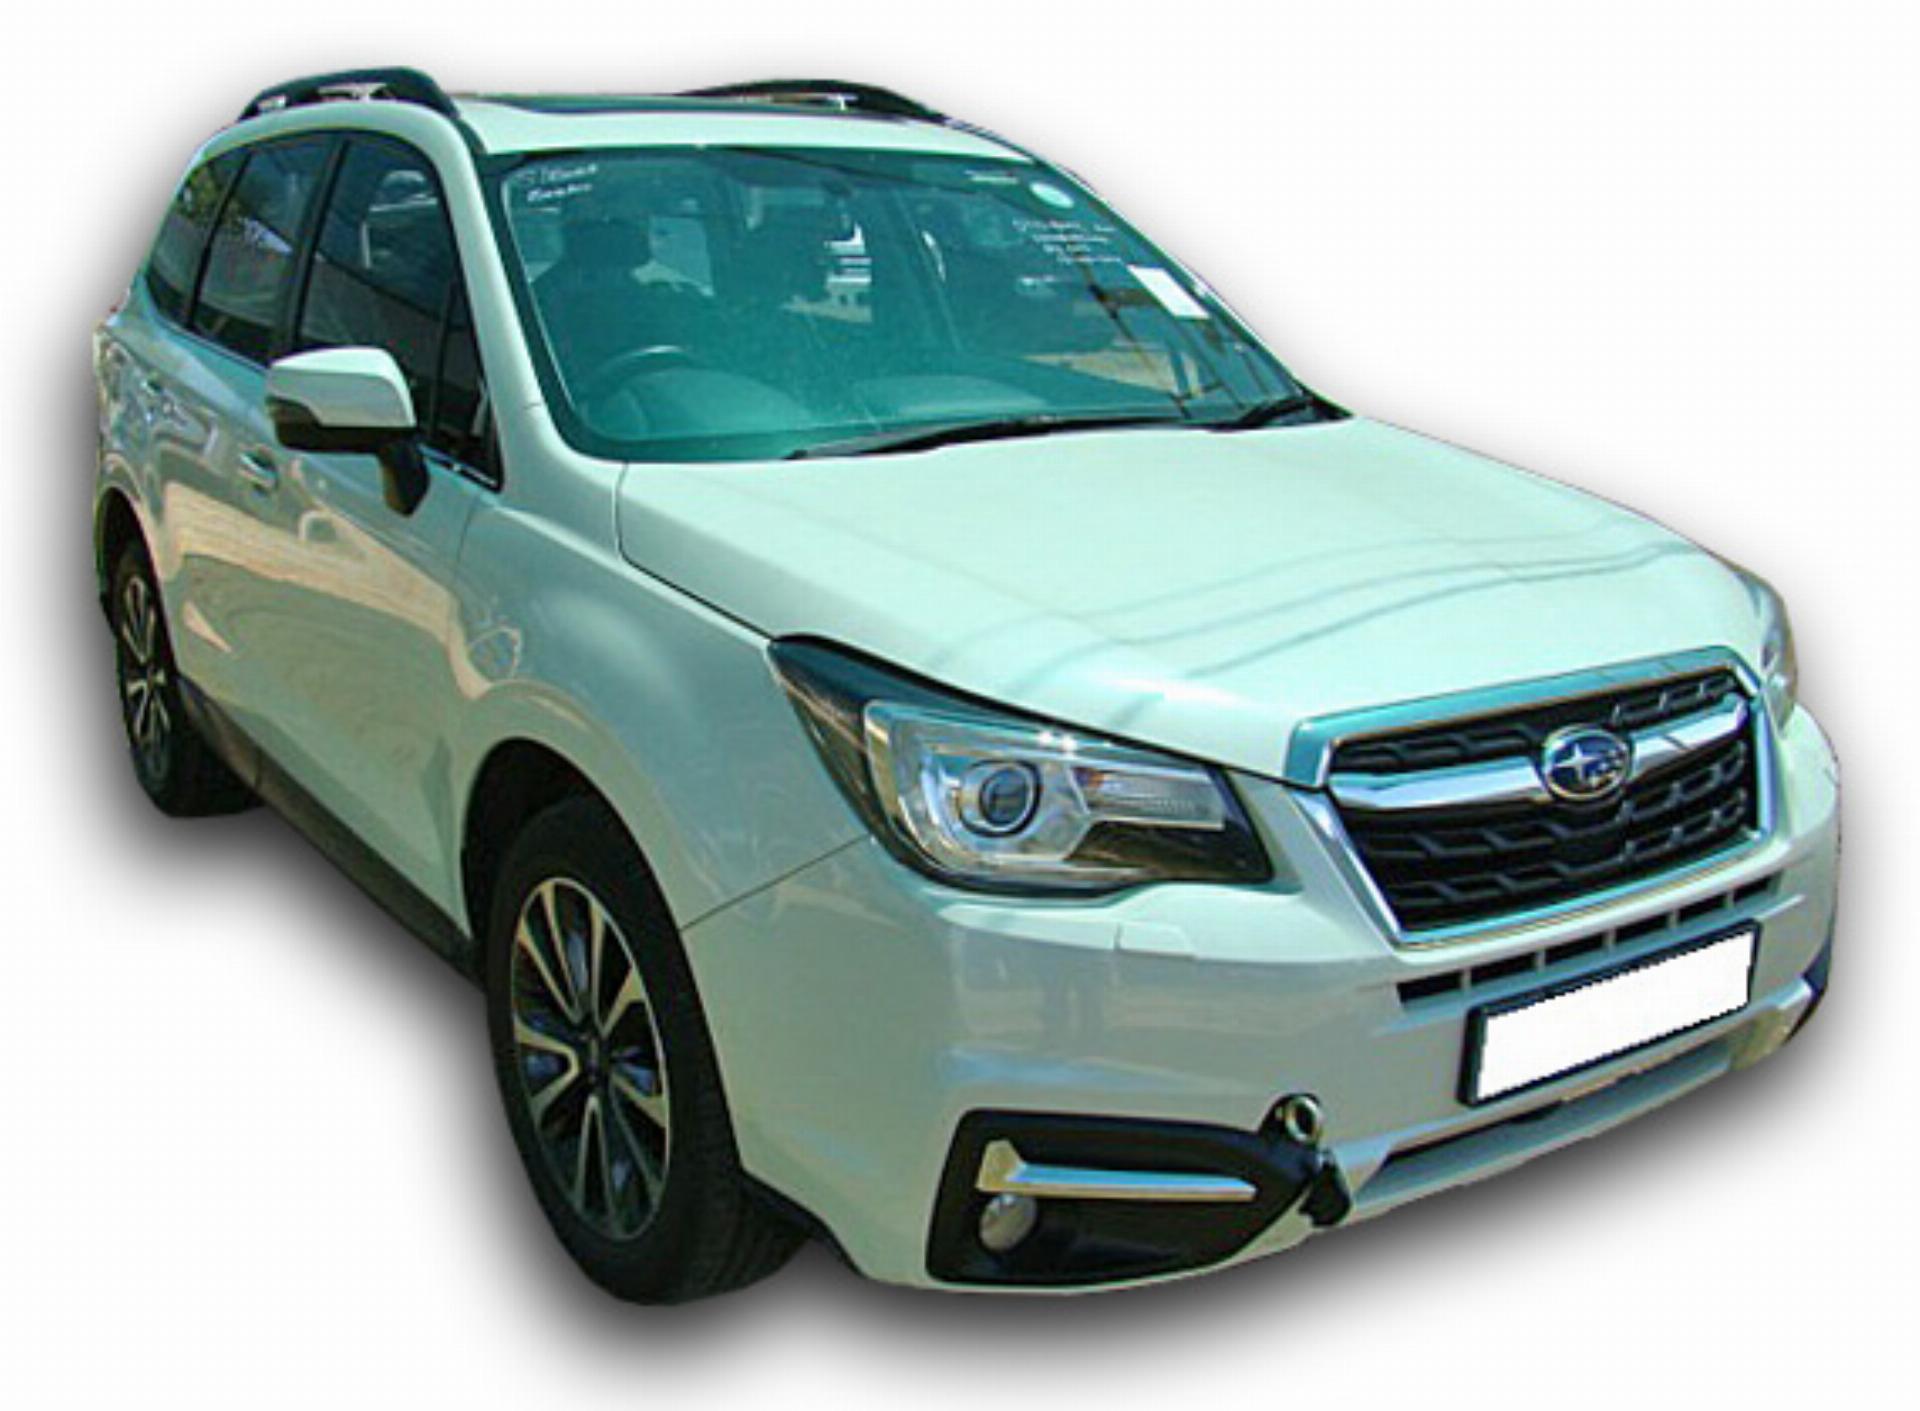 Subaru Forester 2.5 XS Premium